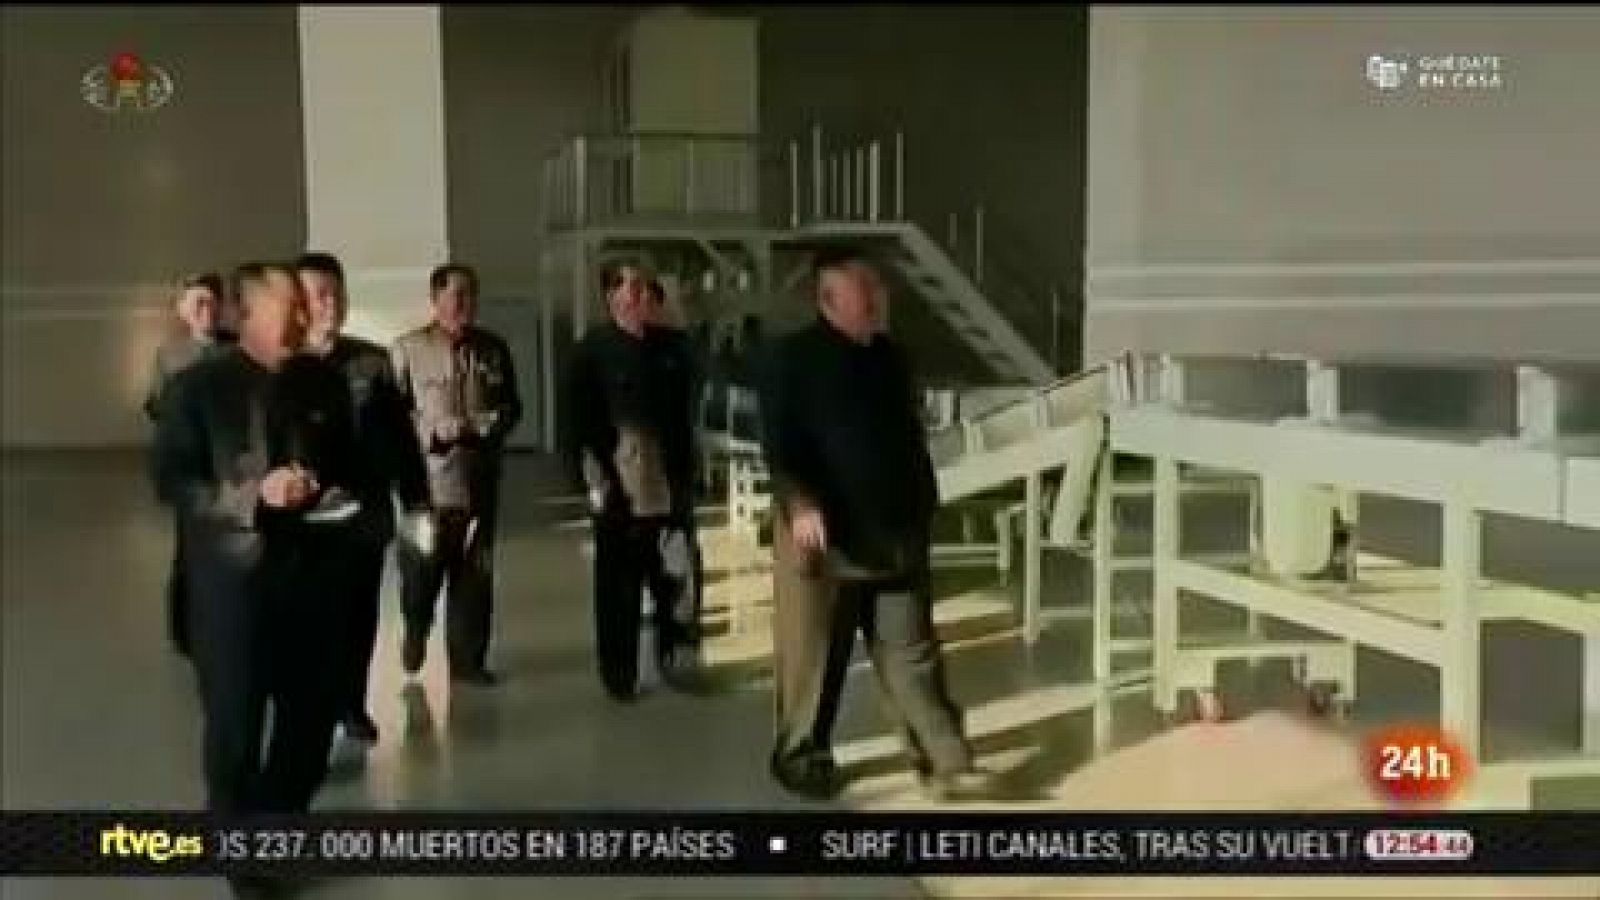 Vídeo: Kim Jong-un reaparece en los medios oficiales norcoreanos tras los rumores sobre su estado de salud - RTVE.es